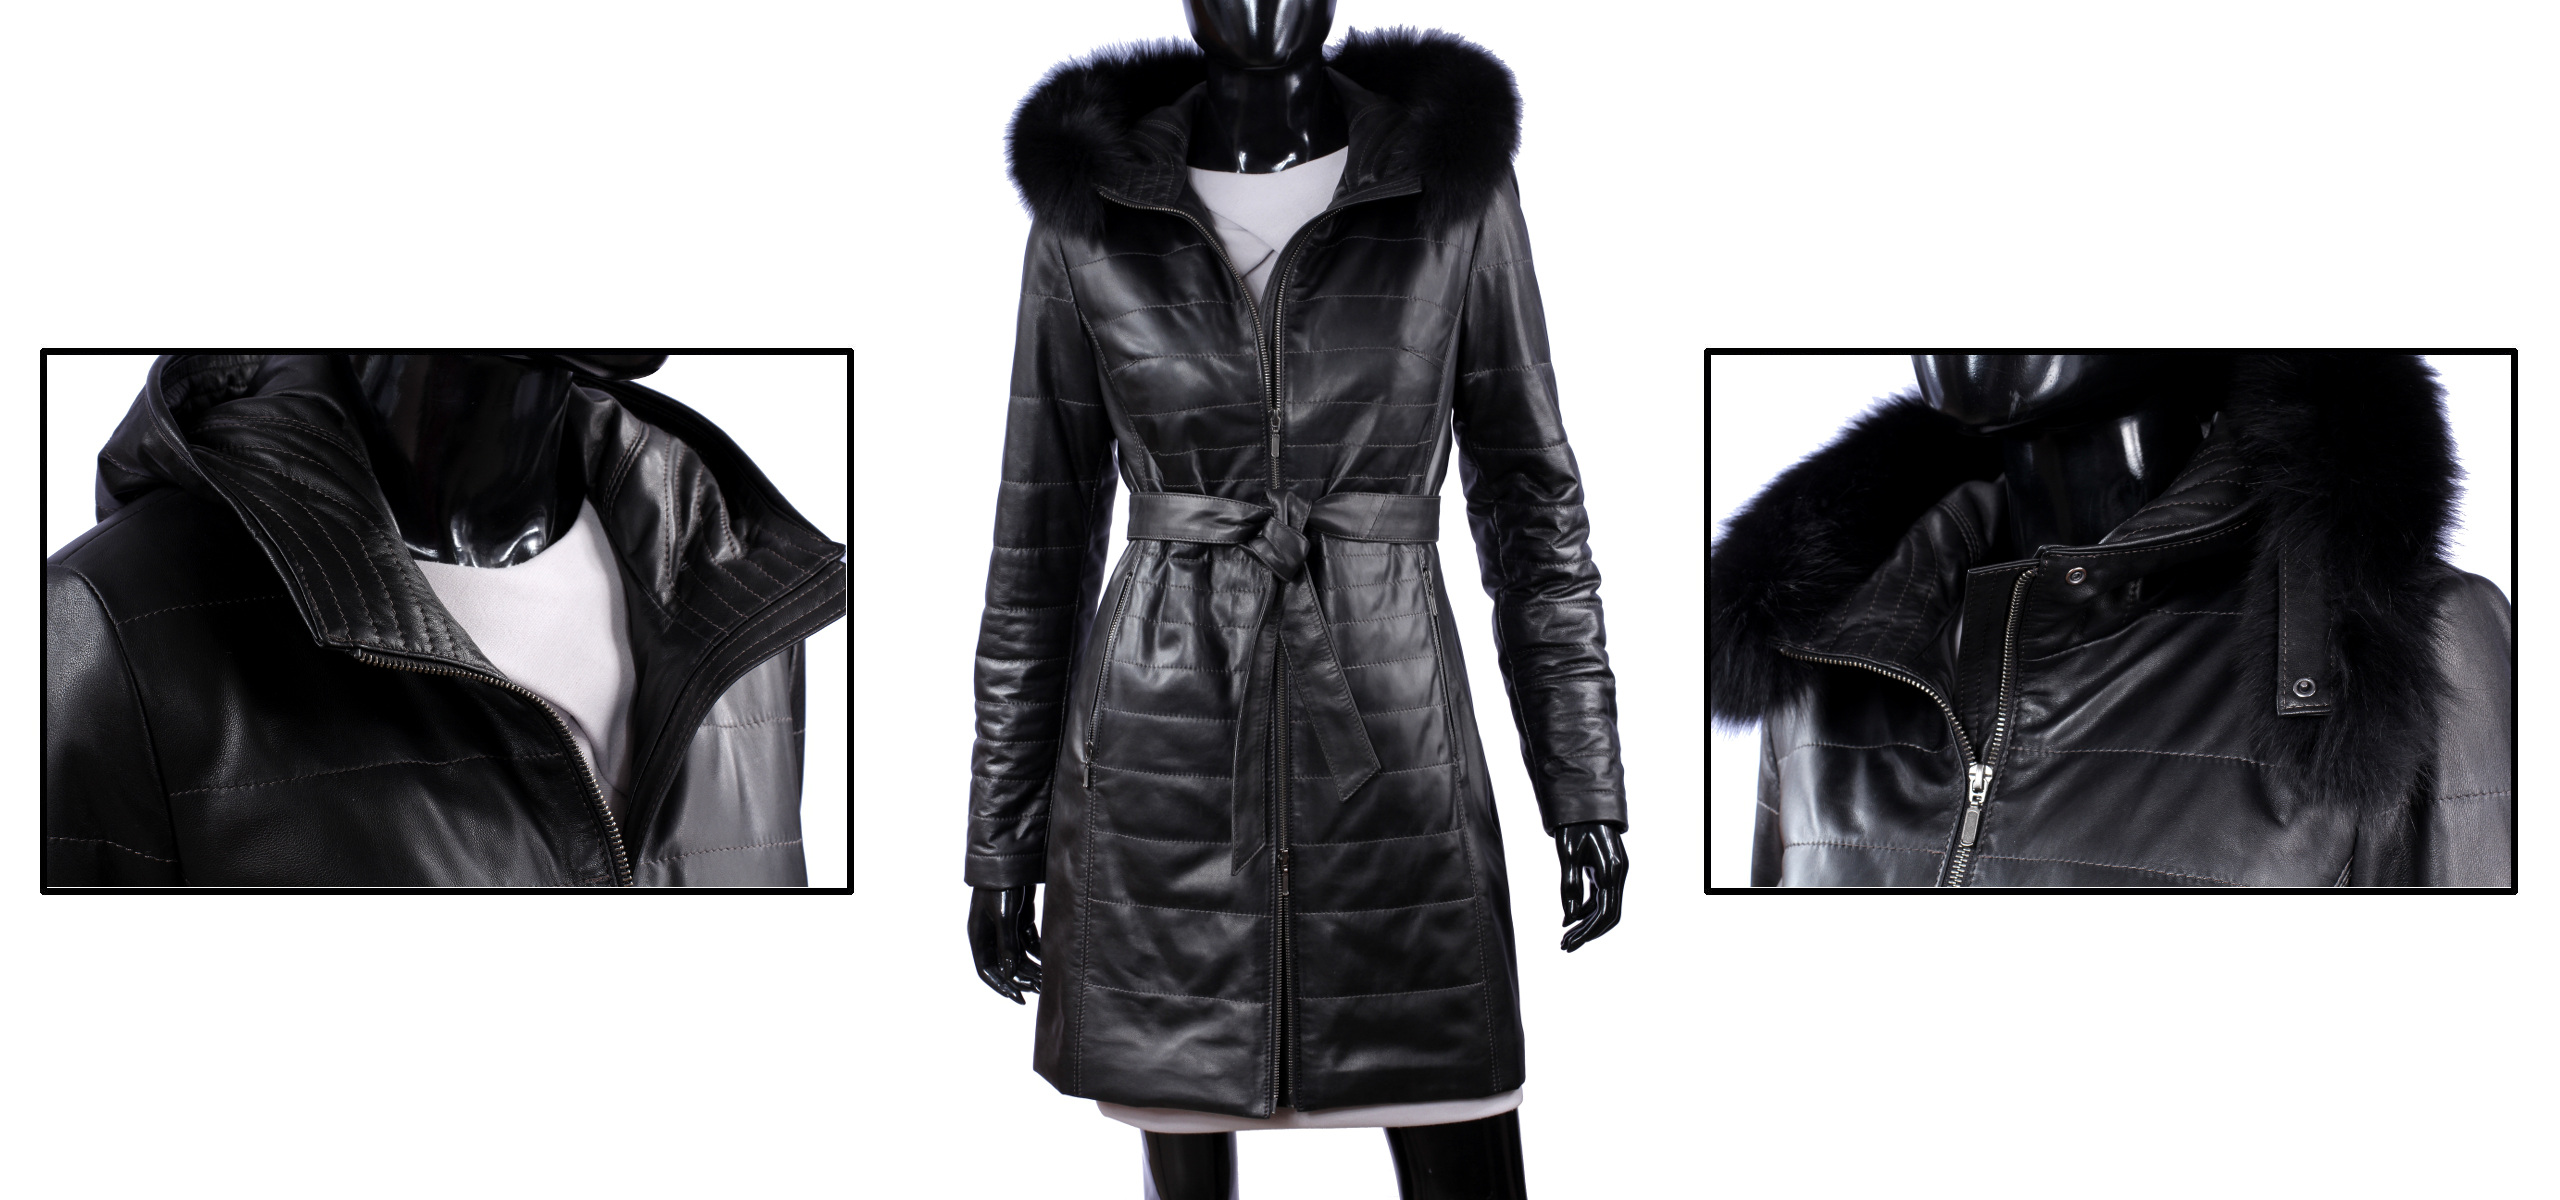 Dámsky kožený kabát Zimný DORJAN ANG450_4 XS Dominujúci materiál prírodná koža